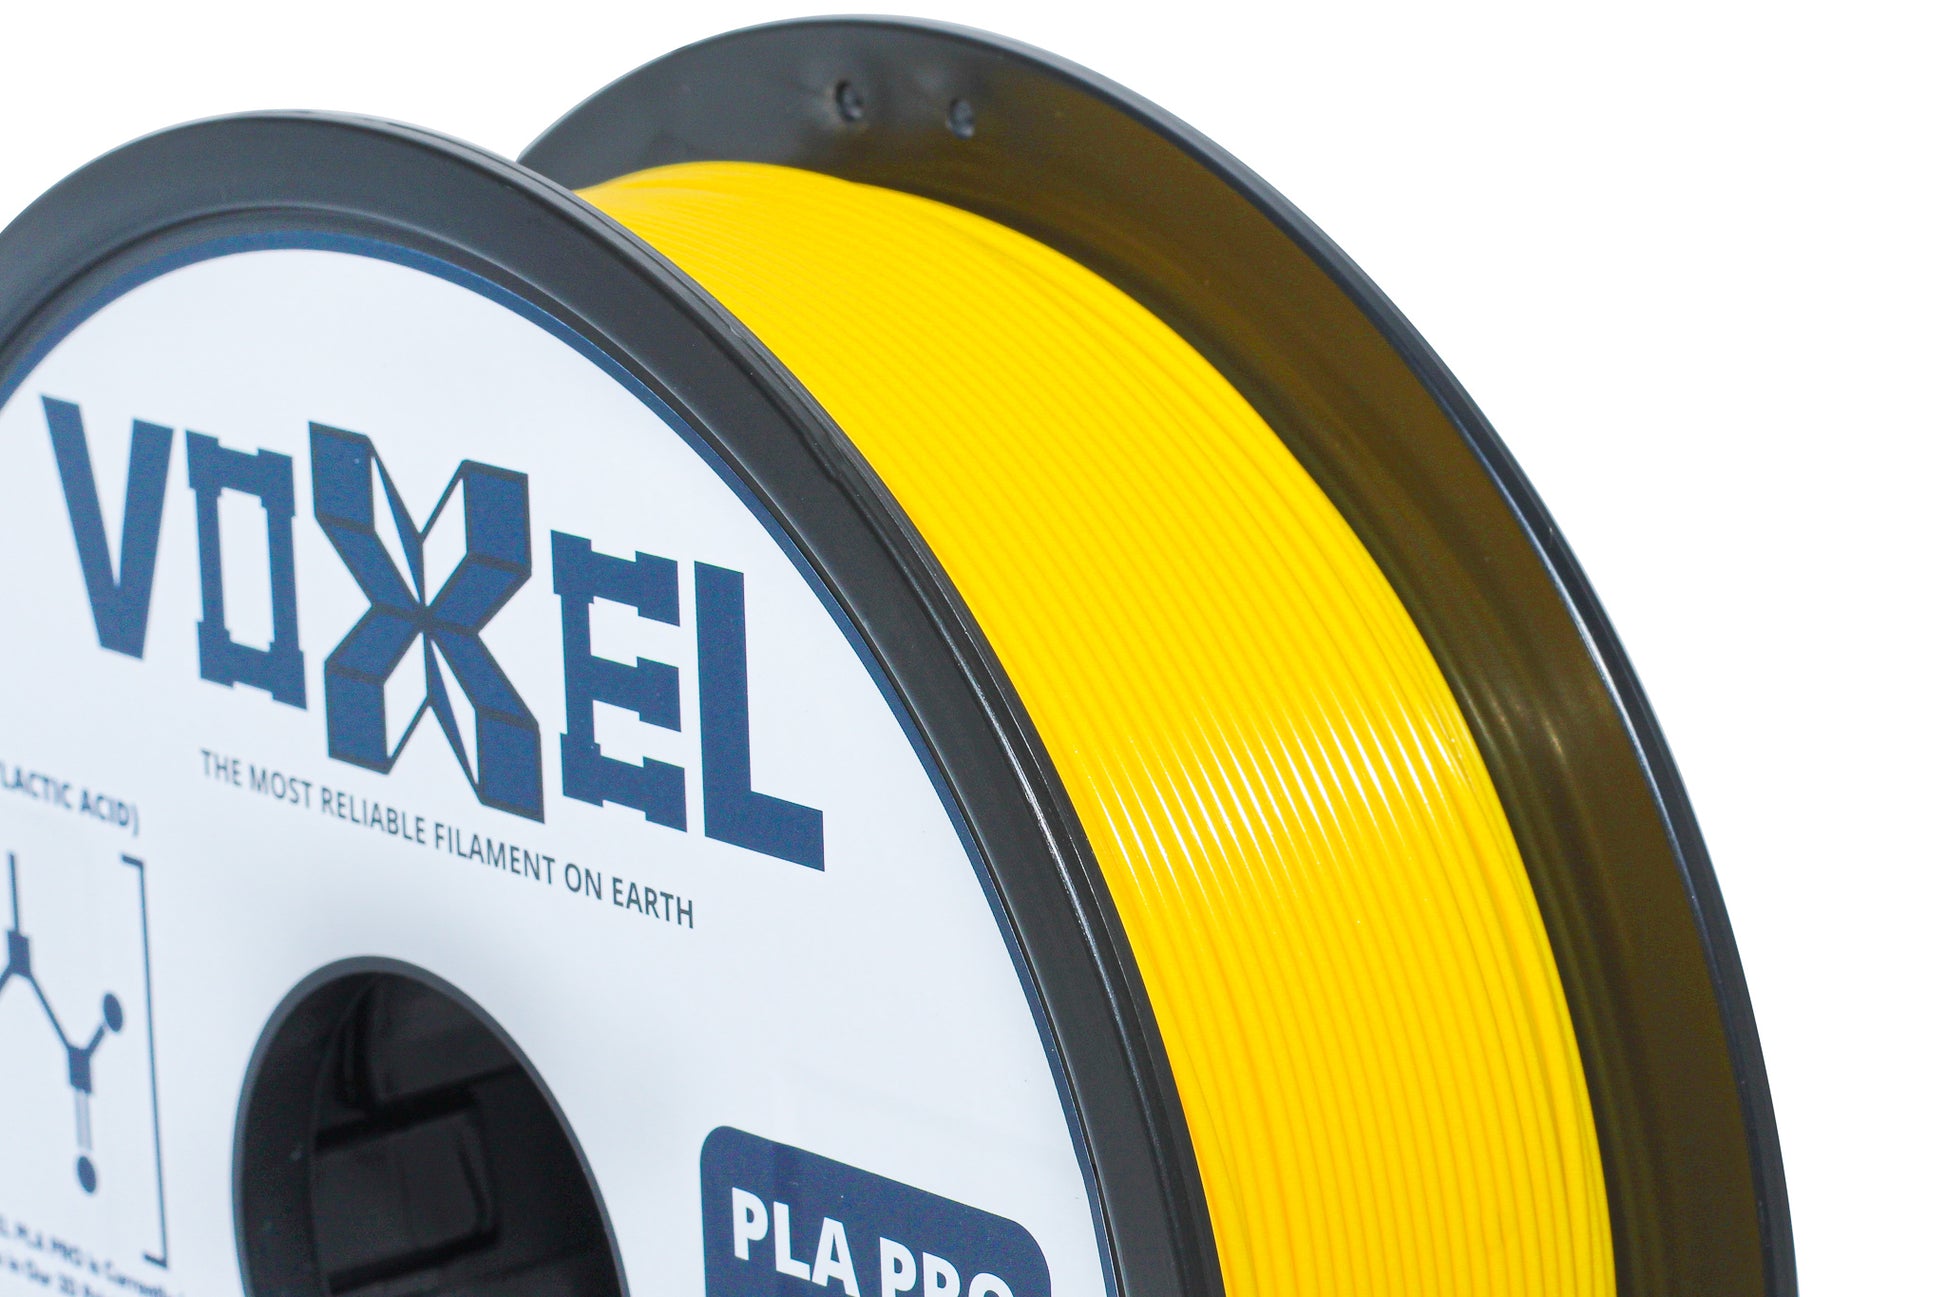 VOXELPLA PLA Plus Yellow Filament - $16.99 1.75mm for FDM 3D Printer